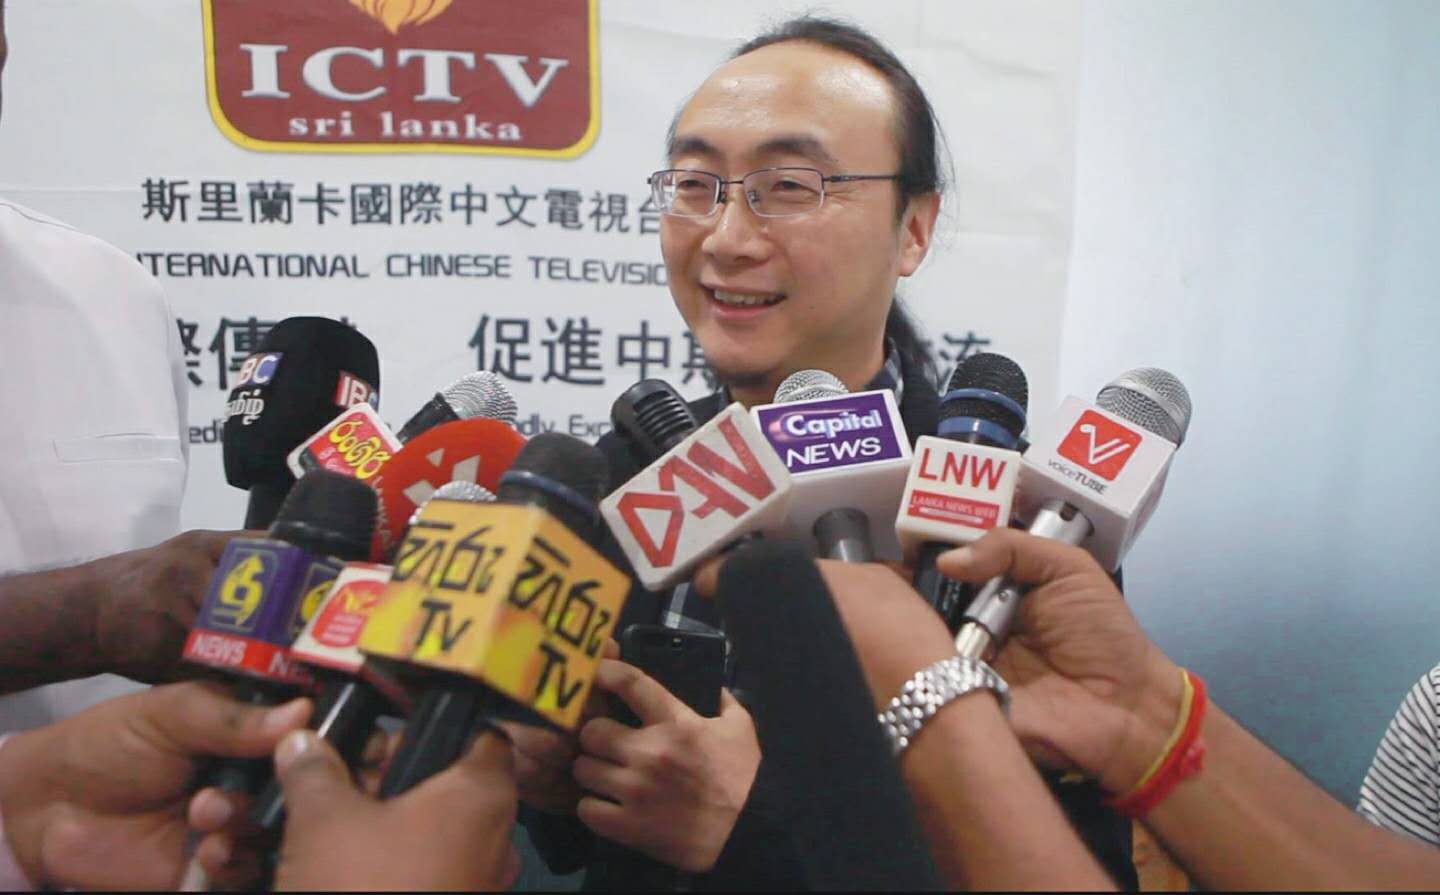 劉繼明作為斯里蘭卡國際中文電視台長接受亞太主流媒體採訪